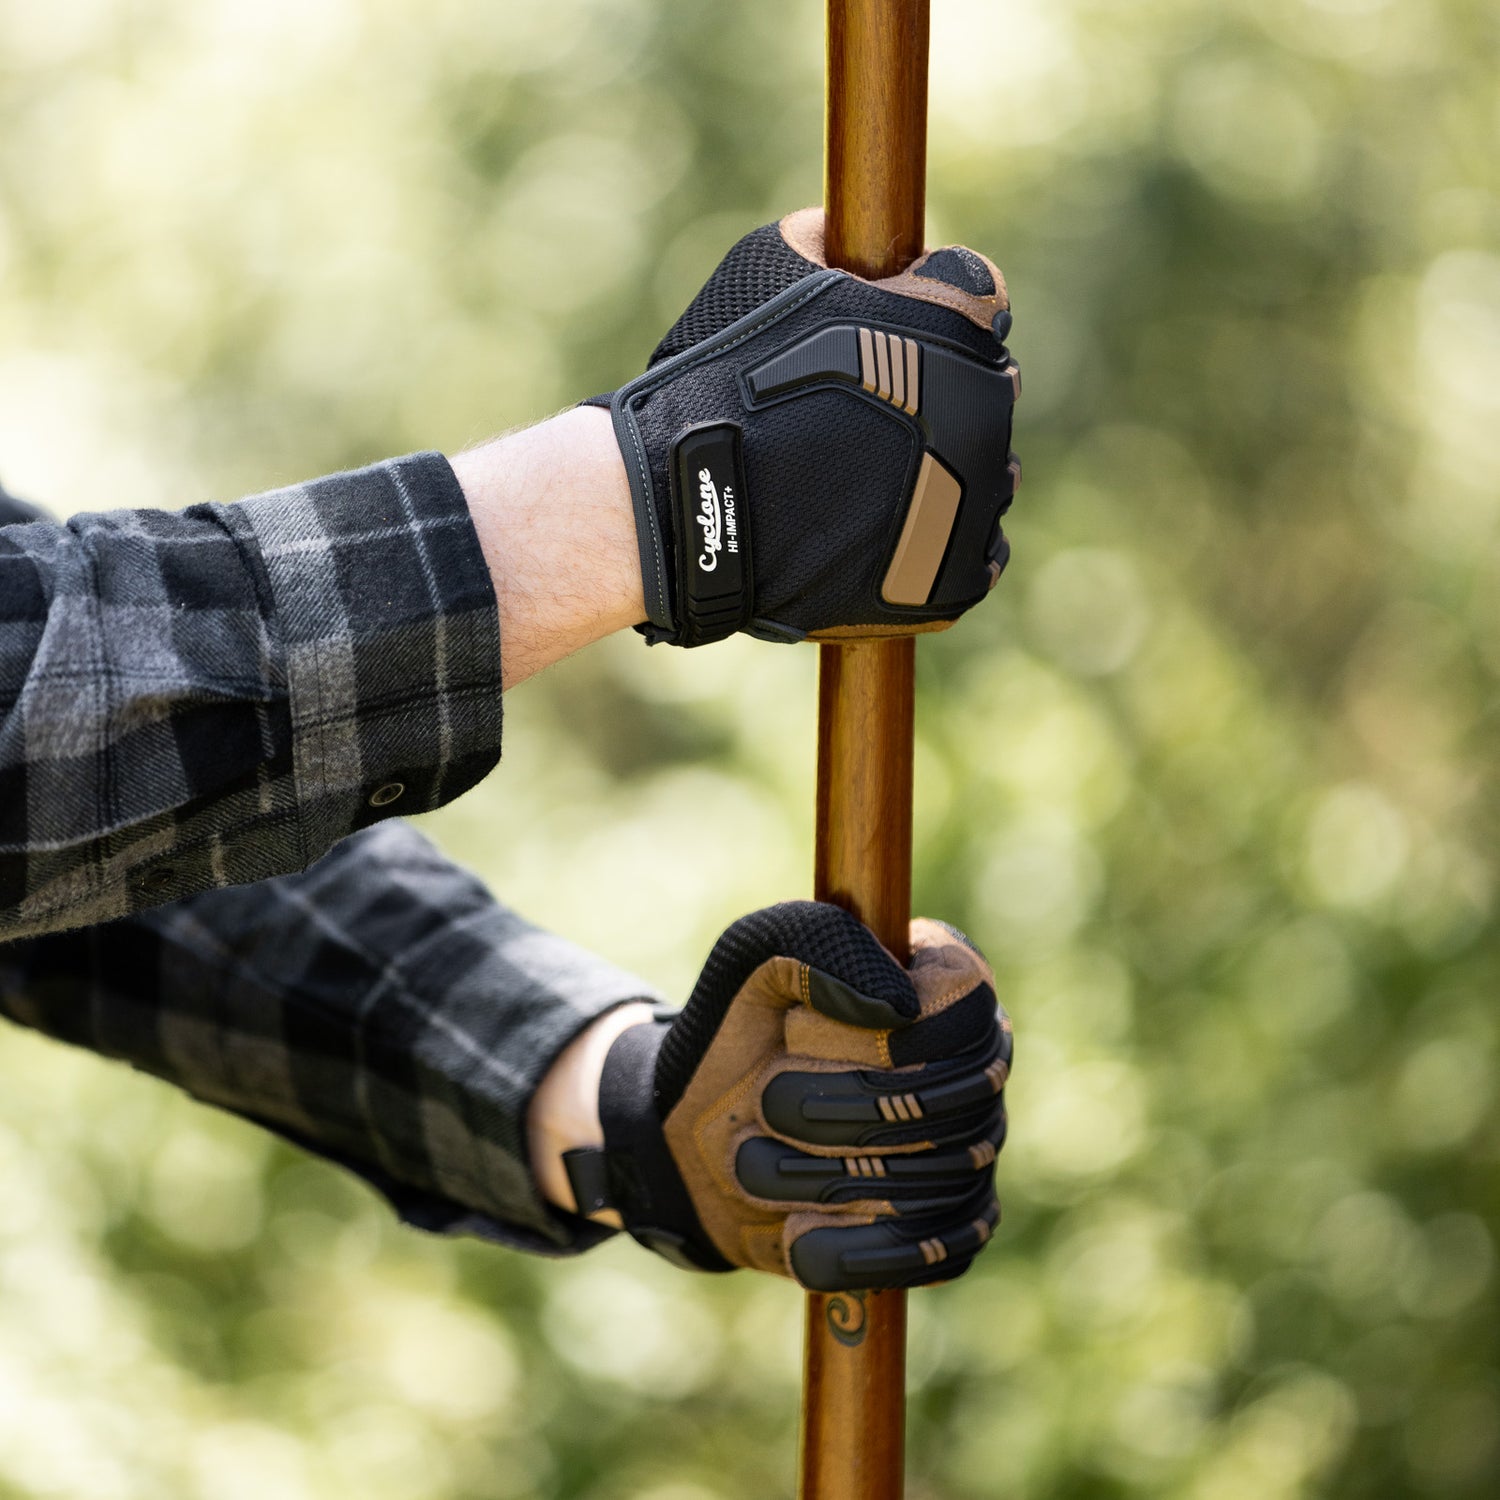 Hi-Impact Landscaper Gloves